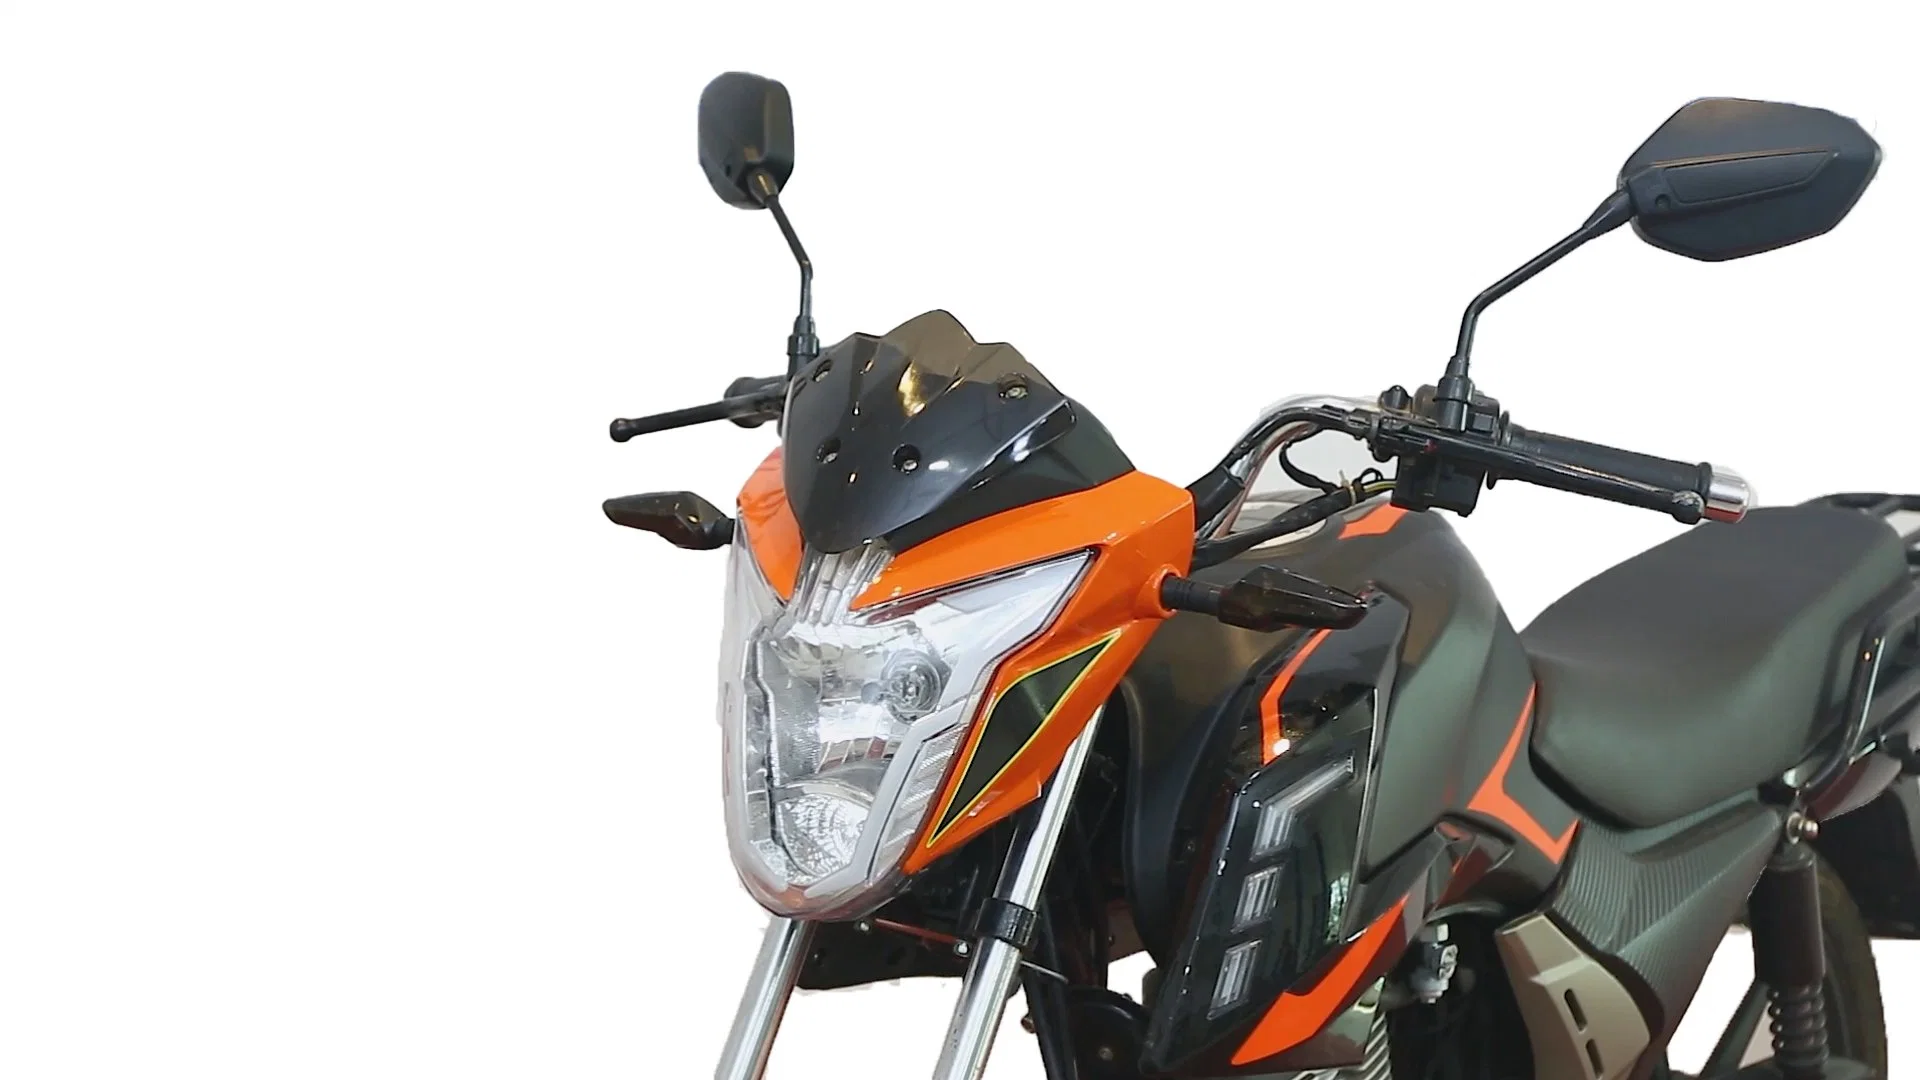 Hongyi Mocha Motocicletas 125cc/150cc Motocicletas baratas a la venta Diseño Clásico Motor Cg de gasolina de 4 tiempos